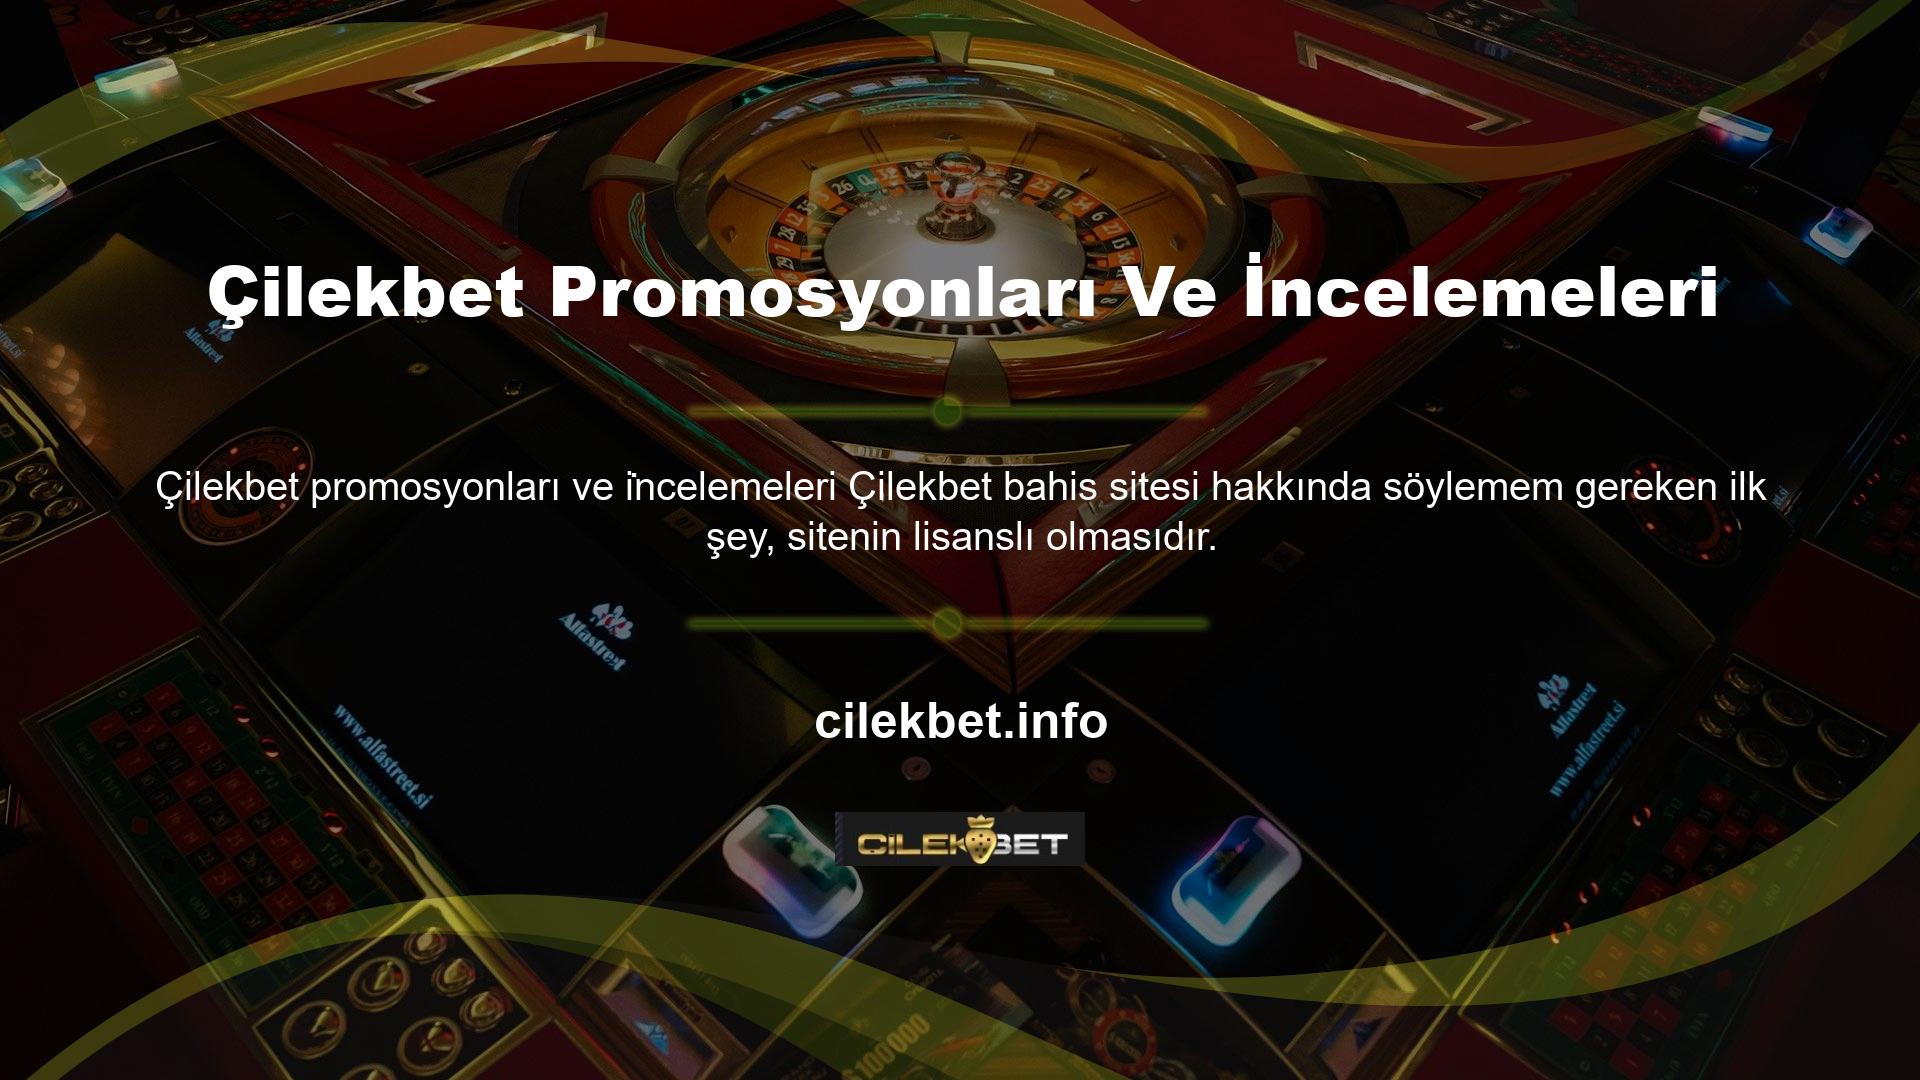 Türkiye'de yasa dışı casino sektöründeki otorite eksikliği nedeniyle birçok dolandırıcılık ağı, oyun ve casino tutkunlarını aldatmak için çeşitli platformlar oluşturmayı amaçlamaktadır